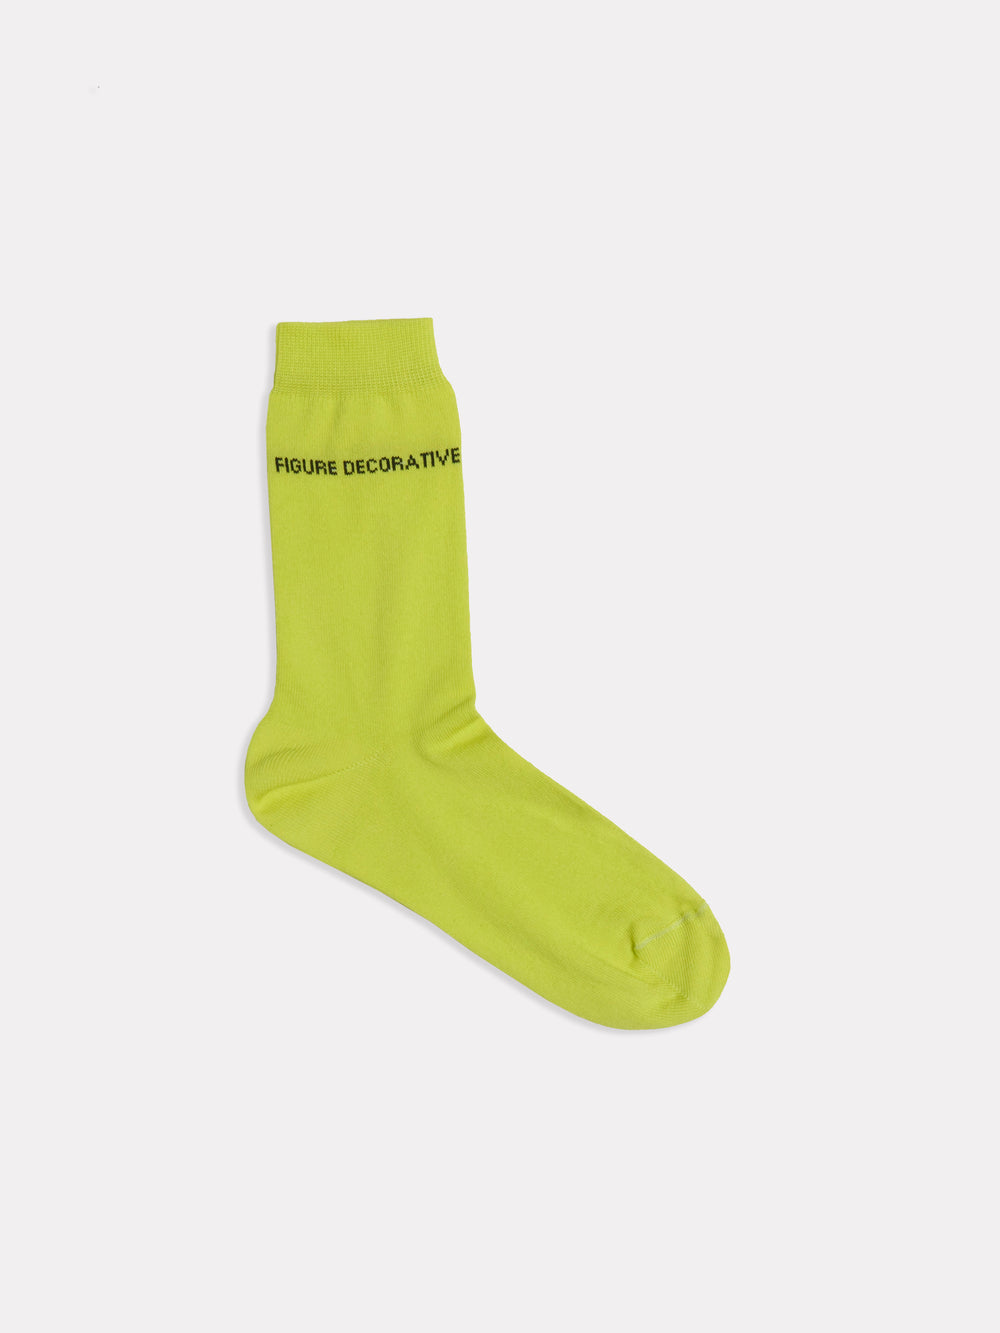 Socks Yellow